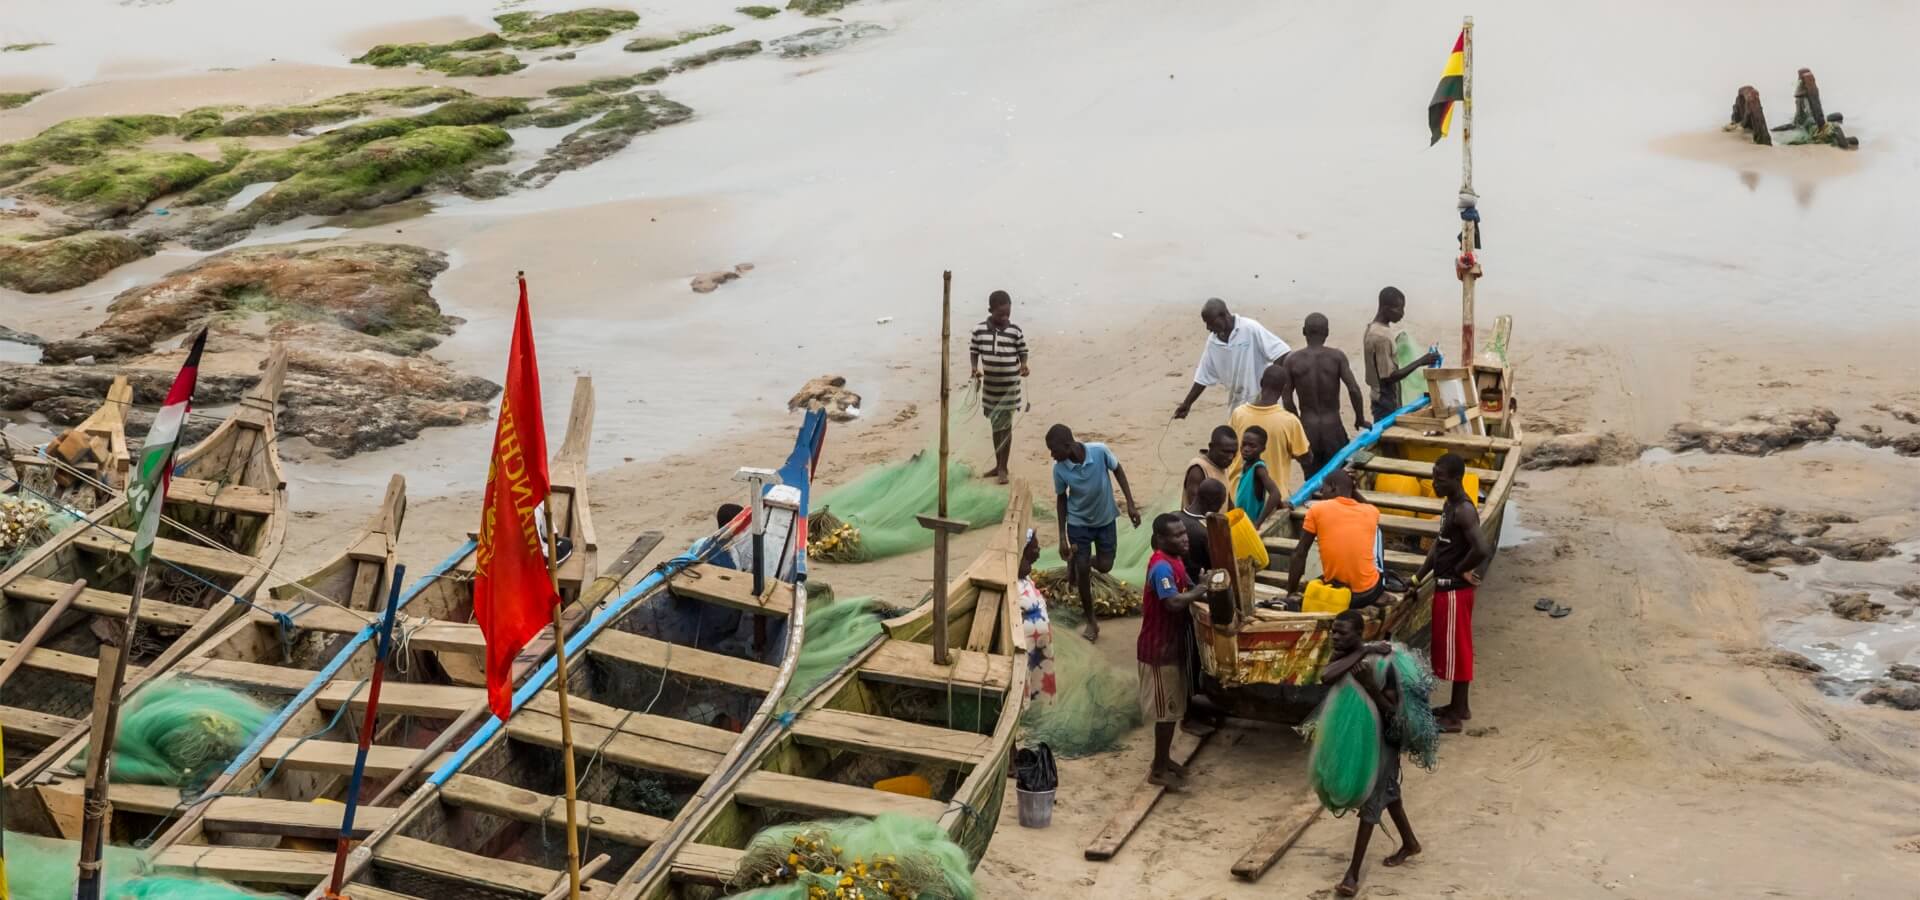 Grupo de pescadores afrodescendientes junto a dos barco en la arena.